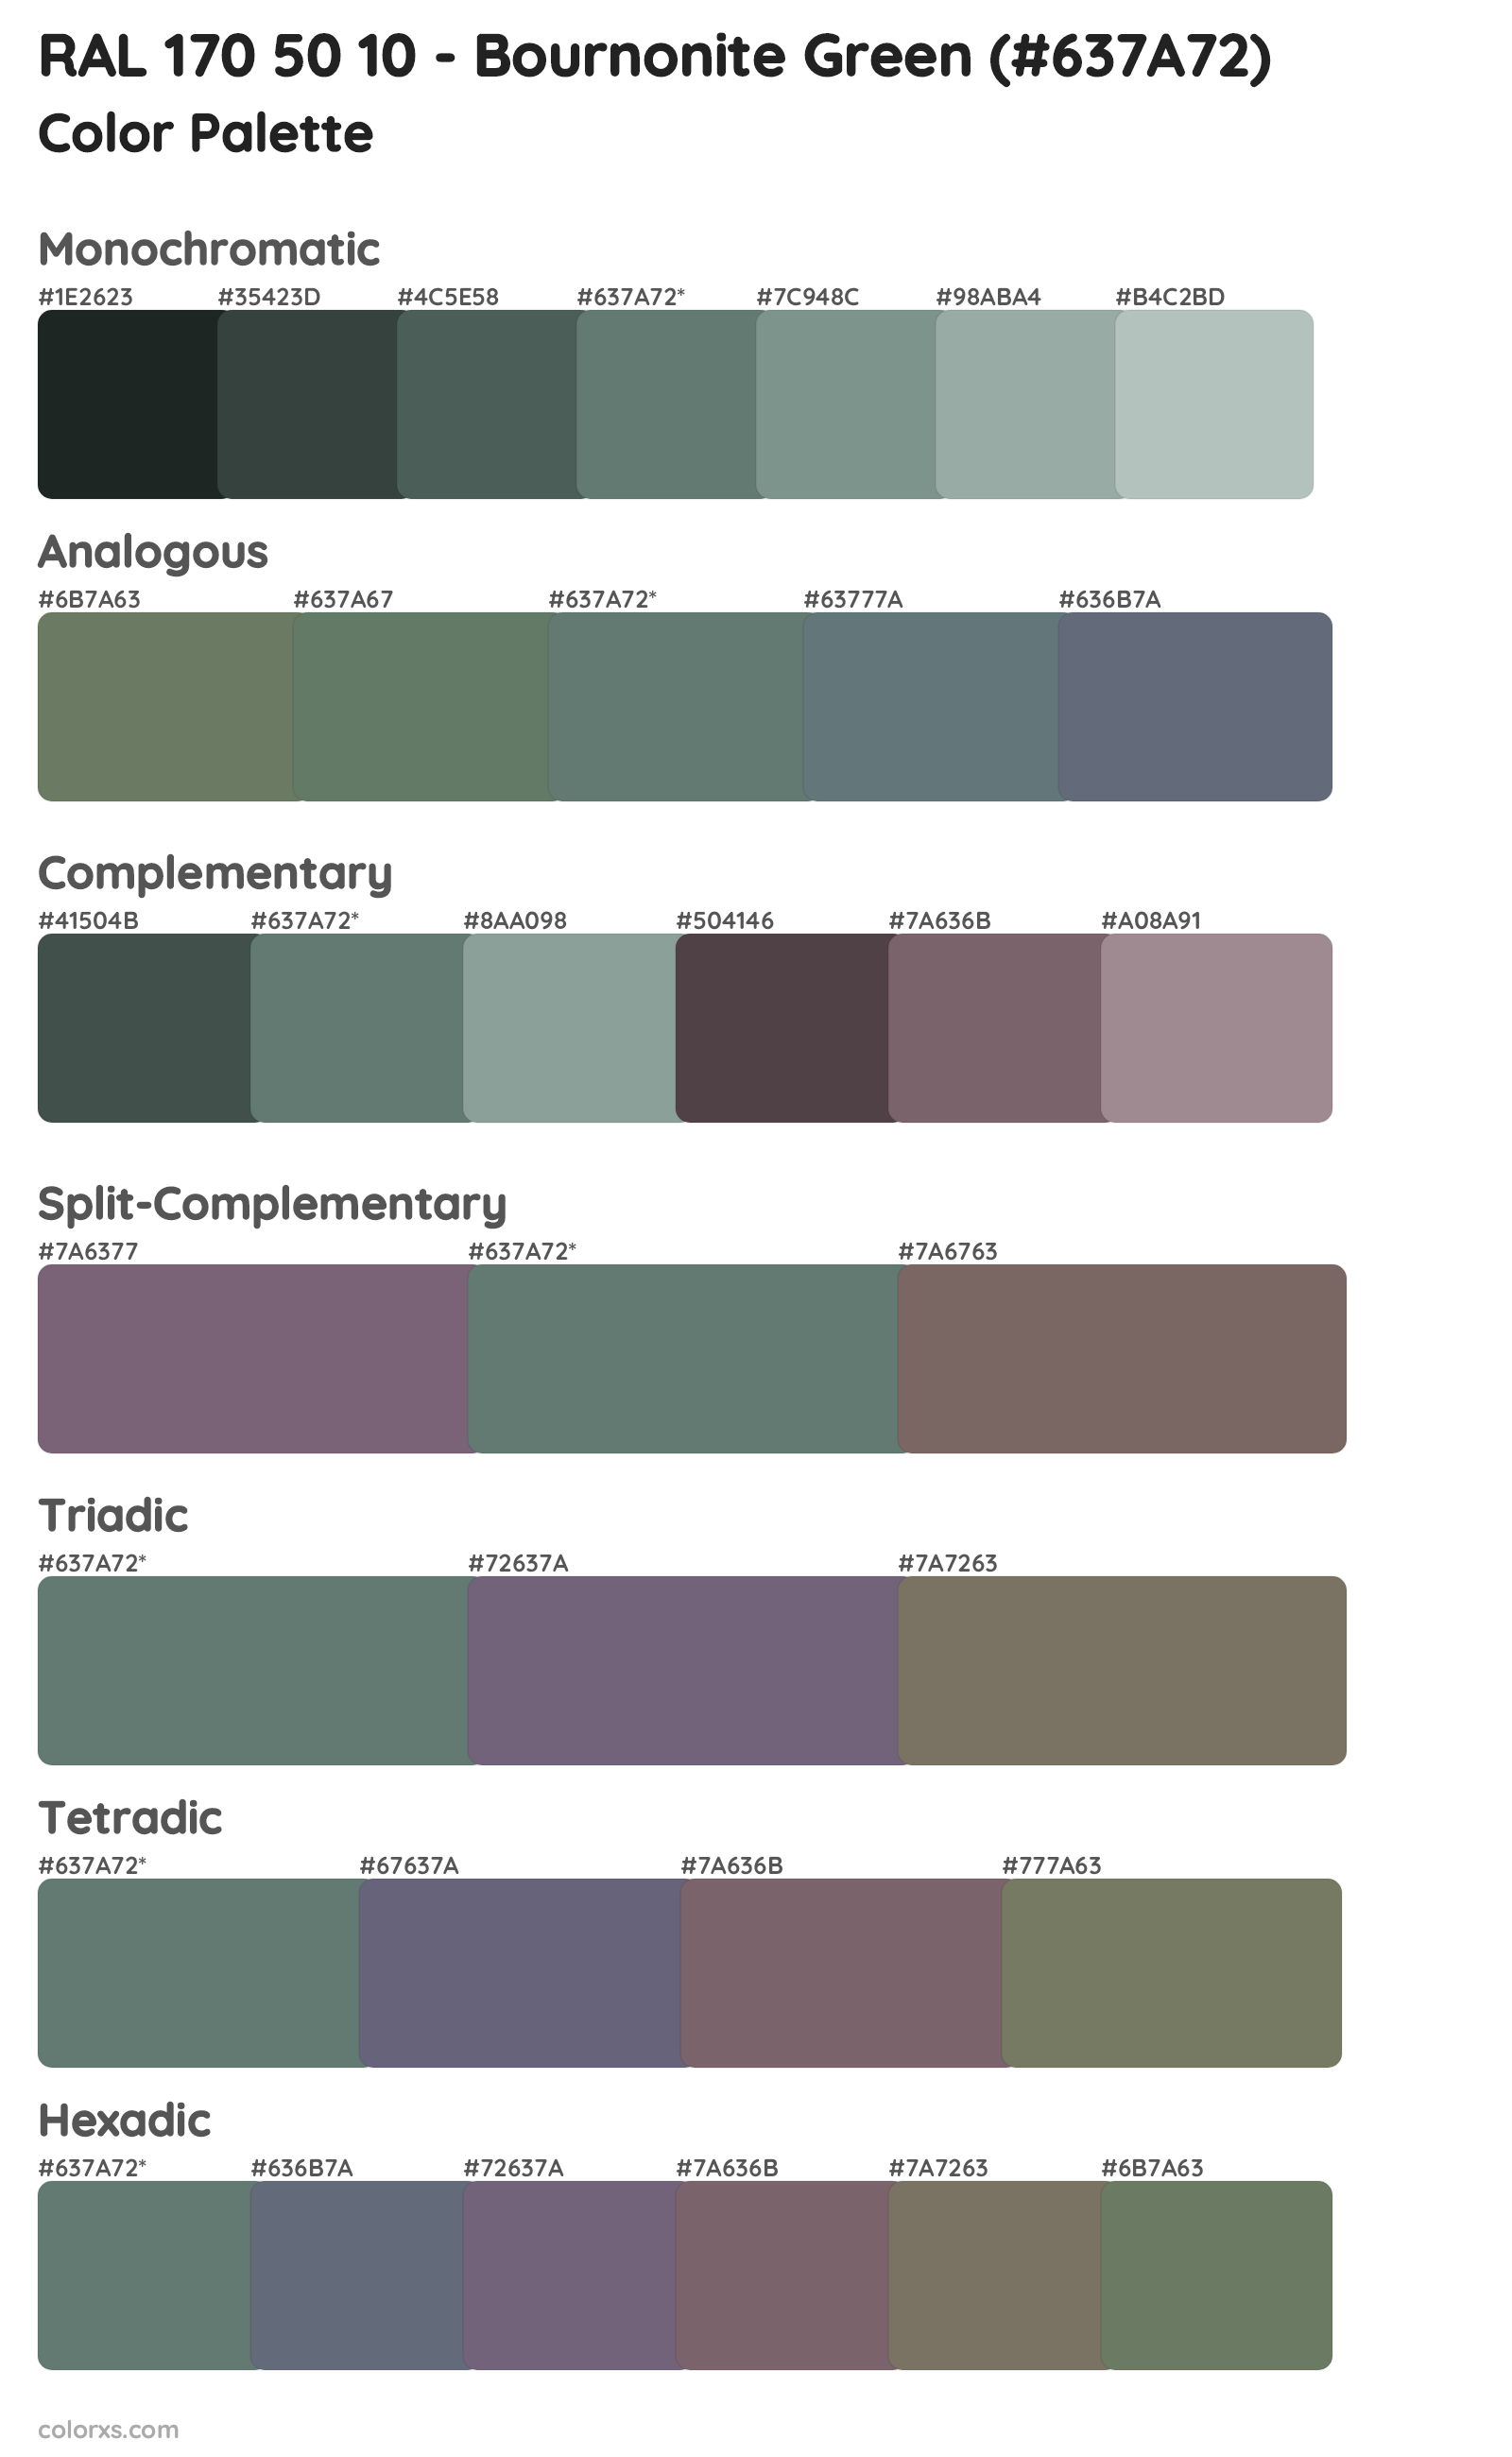 RAL 170 50 10 - Bournonite Green Color Scheme Palettes